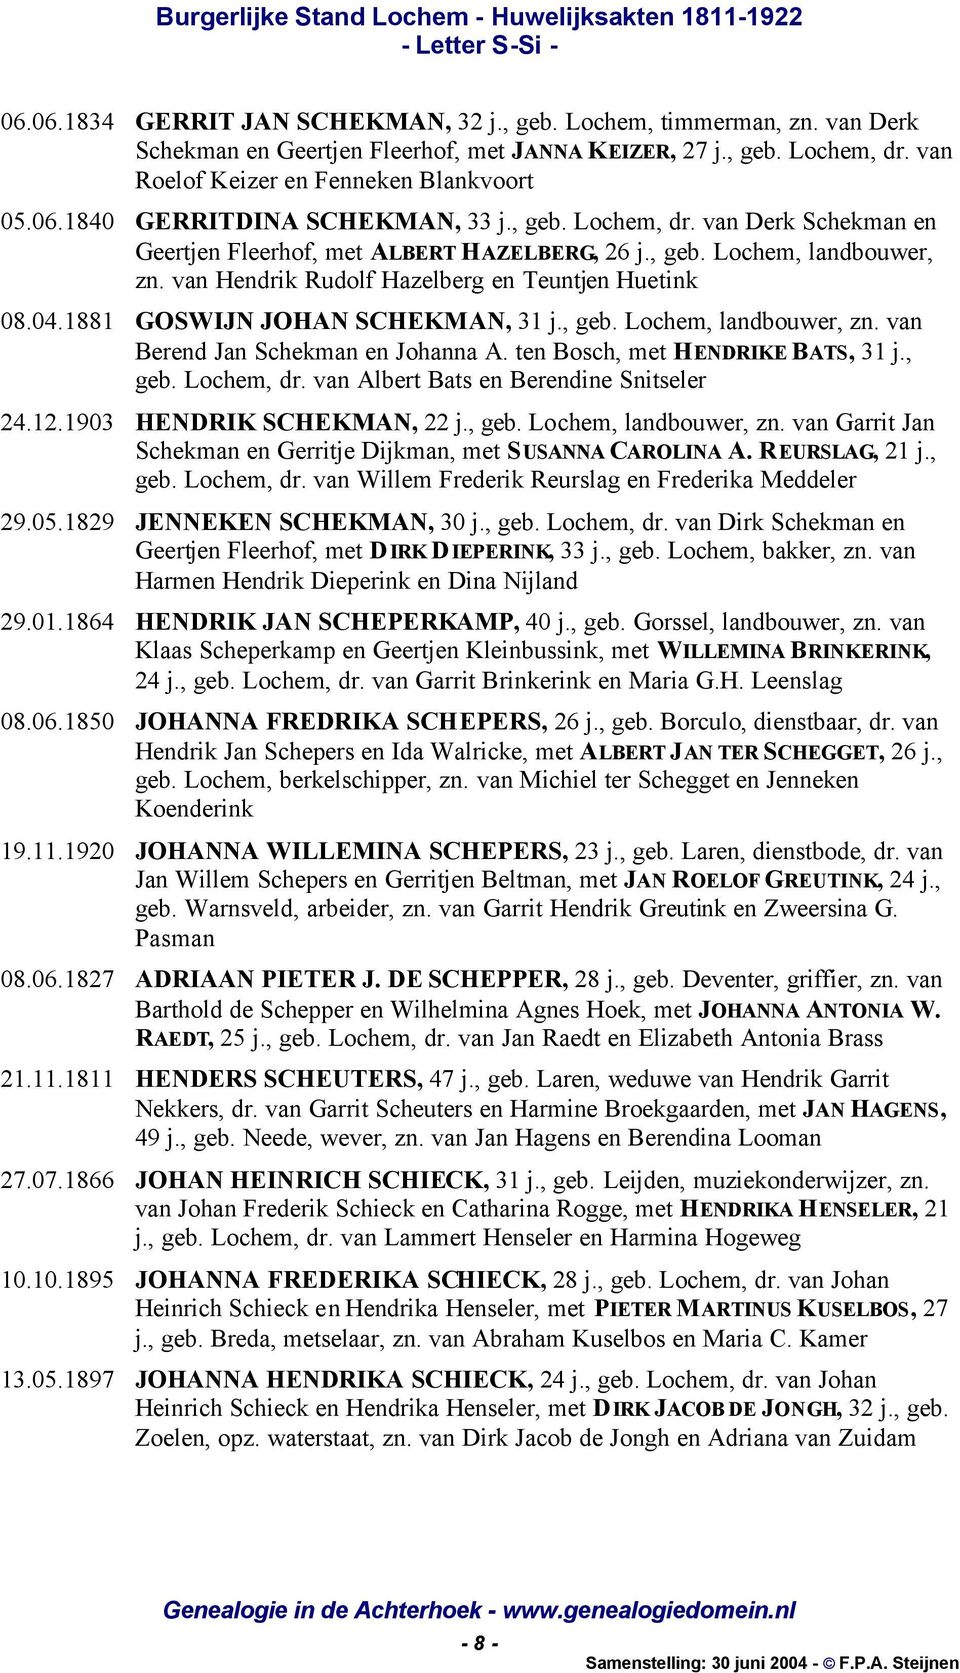 1881 GOSWIJN JOHAN SCHEKMAN, 31 j., geb. Lochem, landbouwer, zn. van Berend Jan Schekman en Johanna A. ten Bosch, met HENDRIKE BATS, 31 j., geb. Lochem, dr. van Albert Bats en Berendine Snitseler 24.